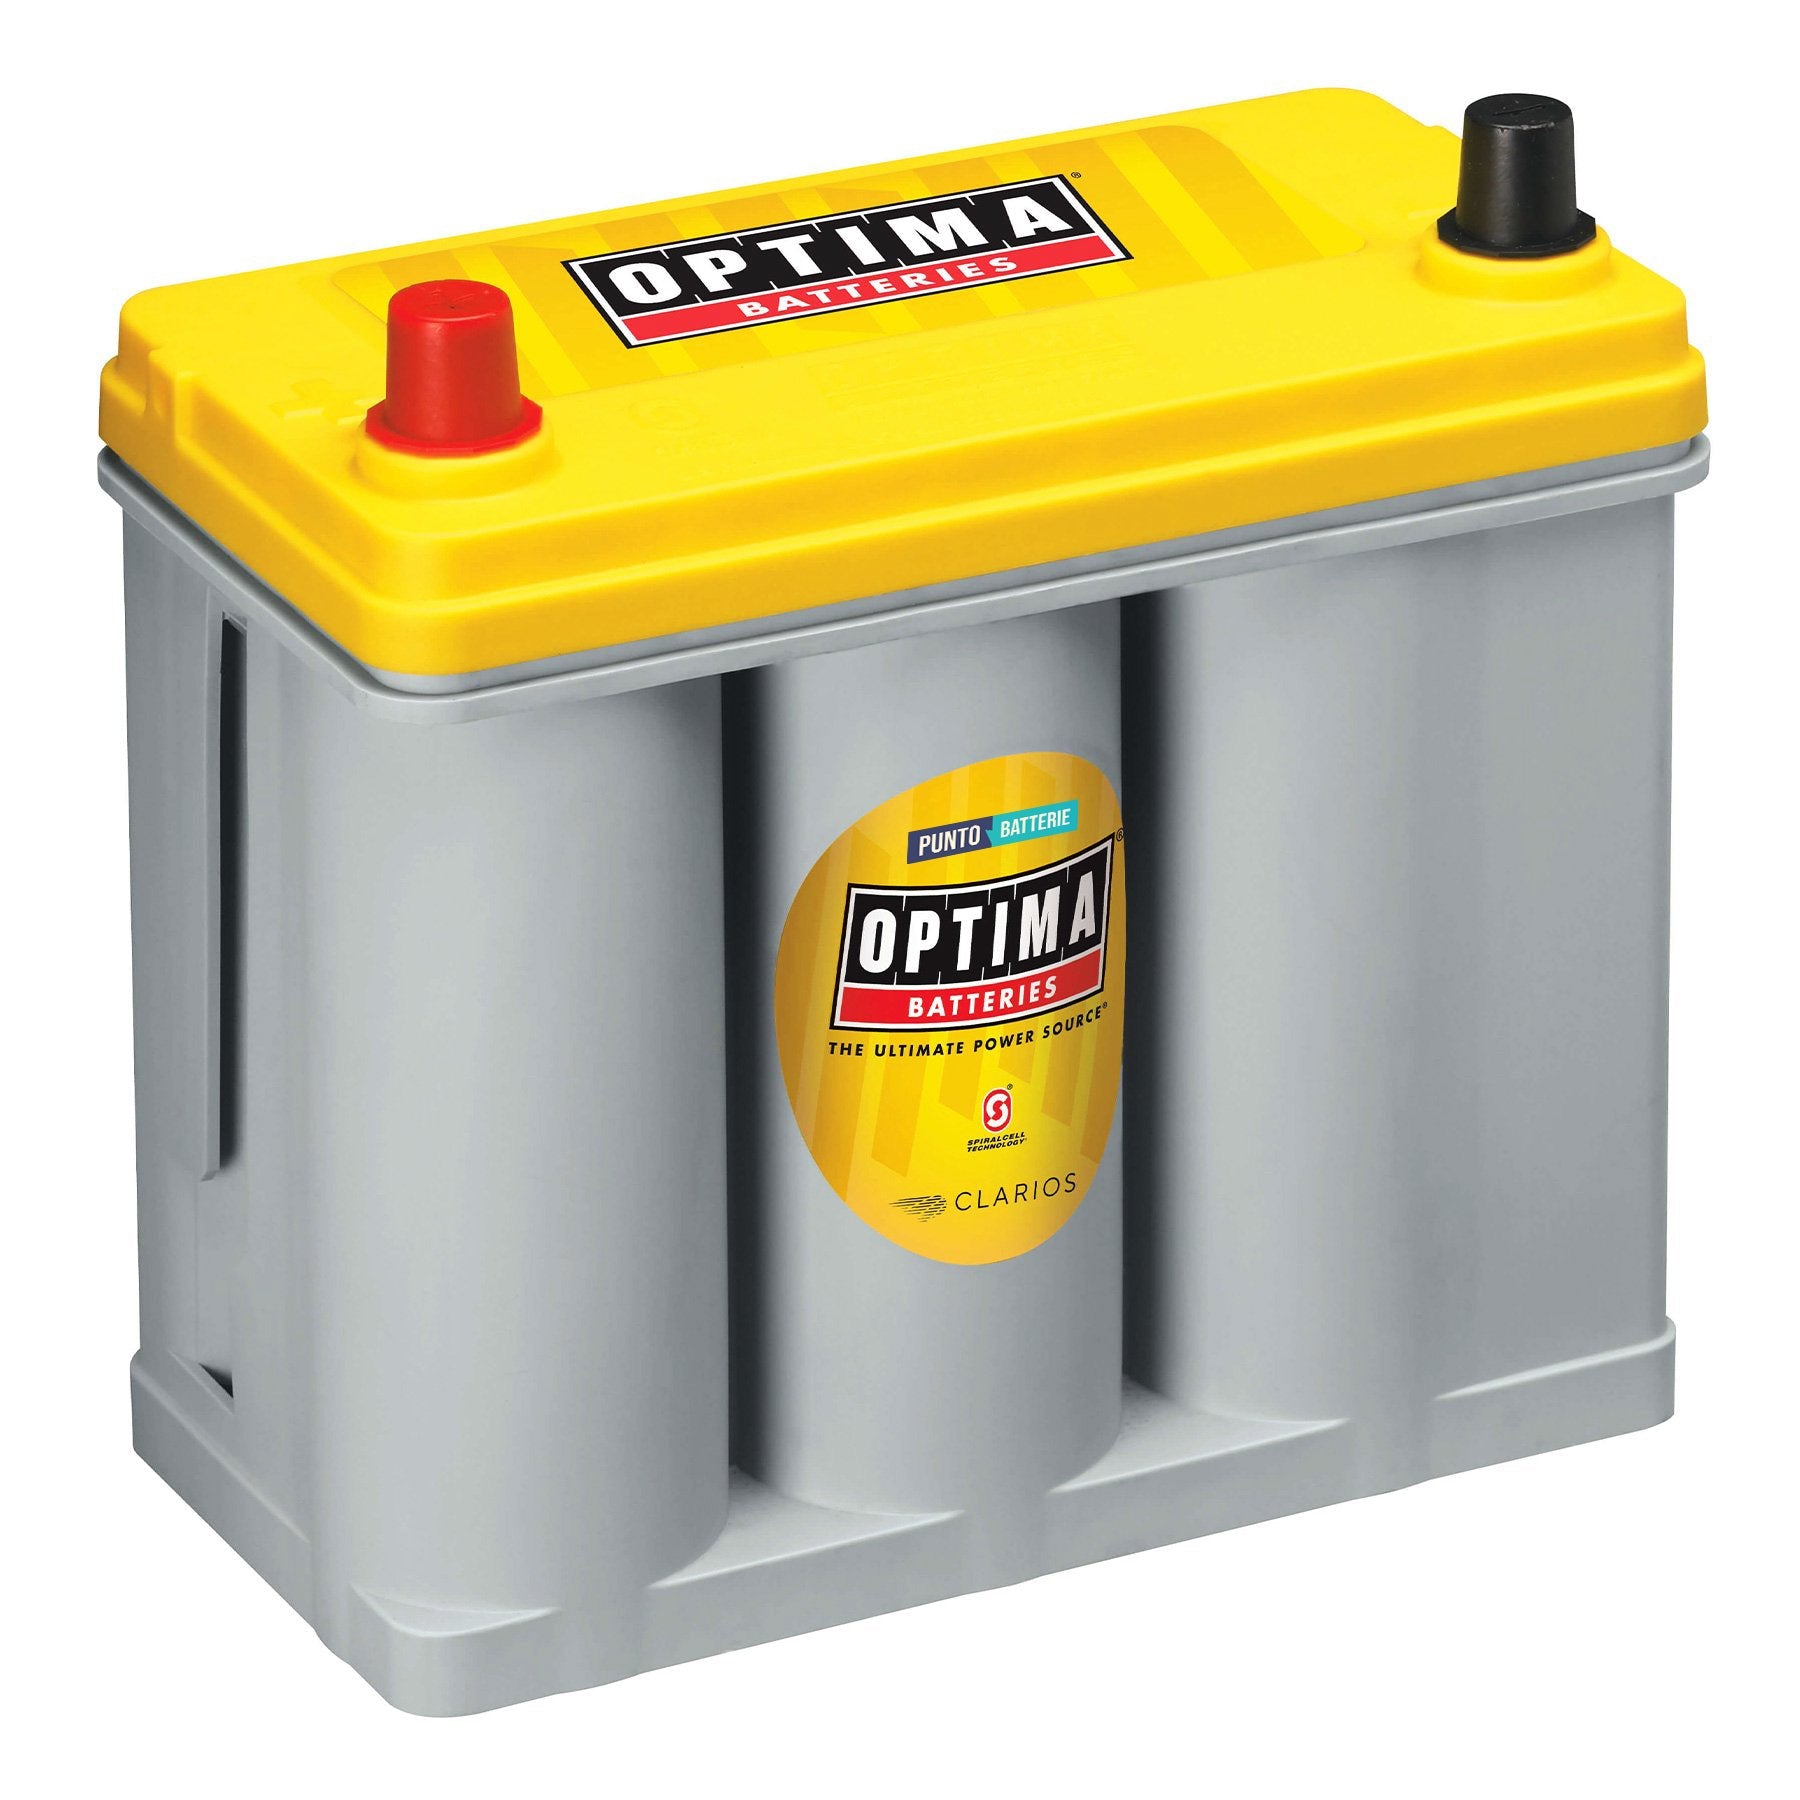 Batteria originale Optima Yellow Top YT S 2,7 J, dimensioni 237 x 129 x 227, polo positivo a sinistra, 12 volt, 38 amperora, 460 ampere, AGM. Batteria per veicoli e per l'alimentazione di servizi.